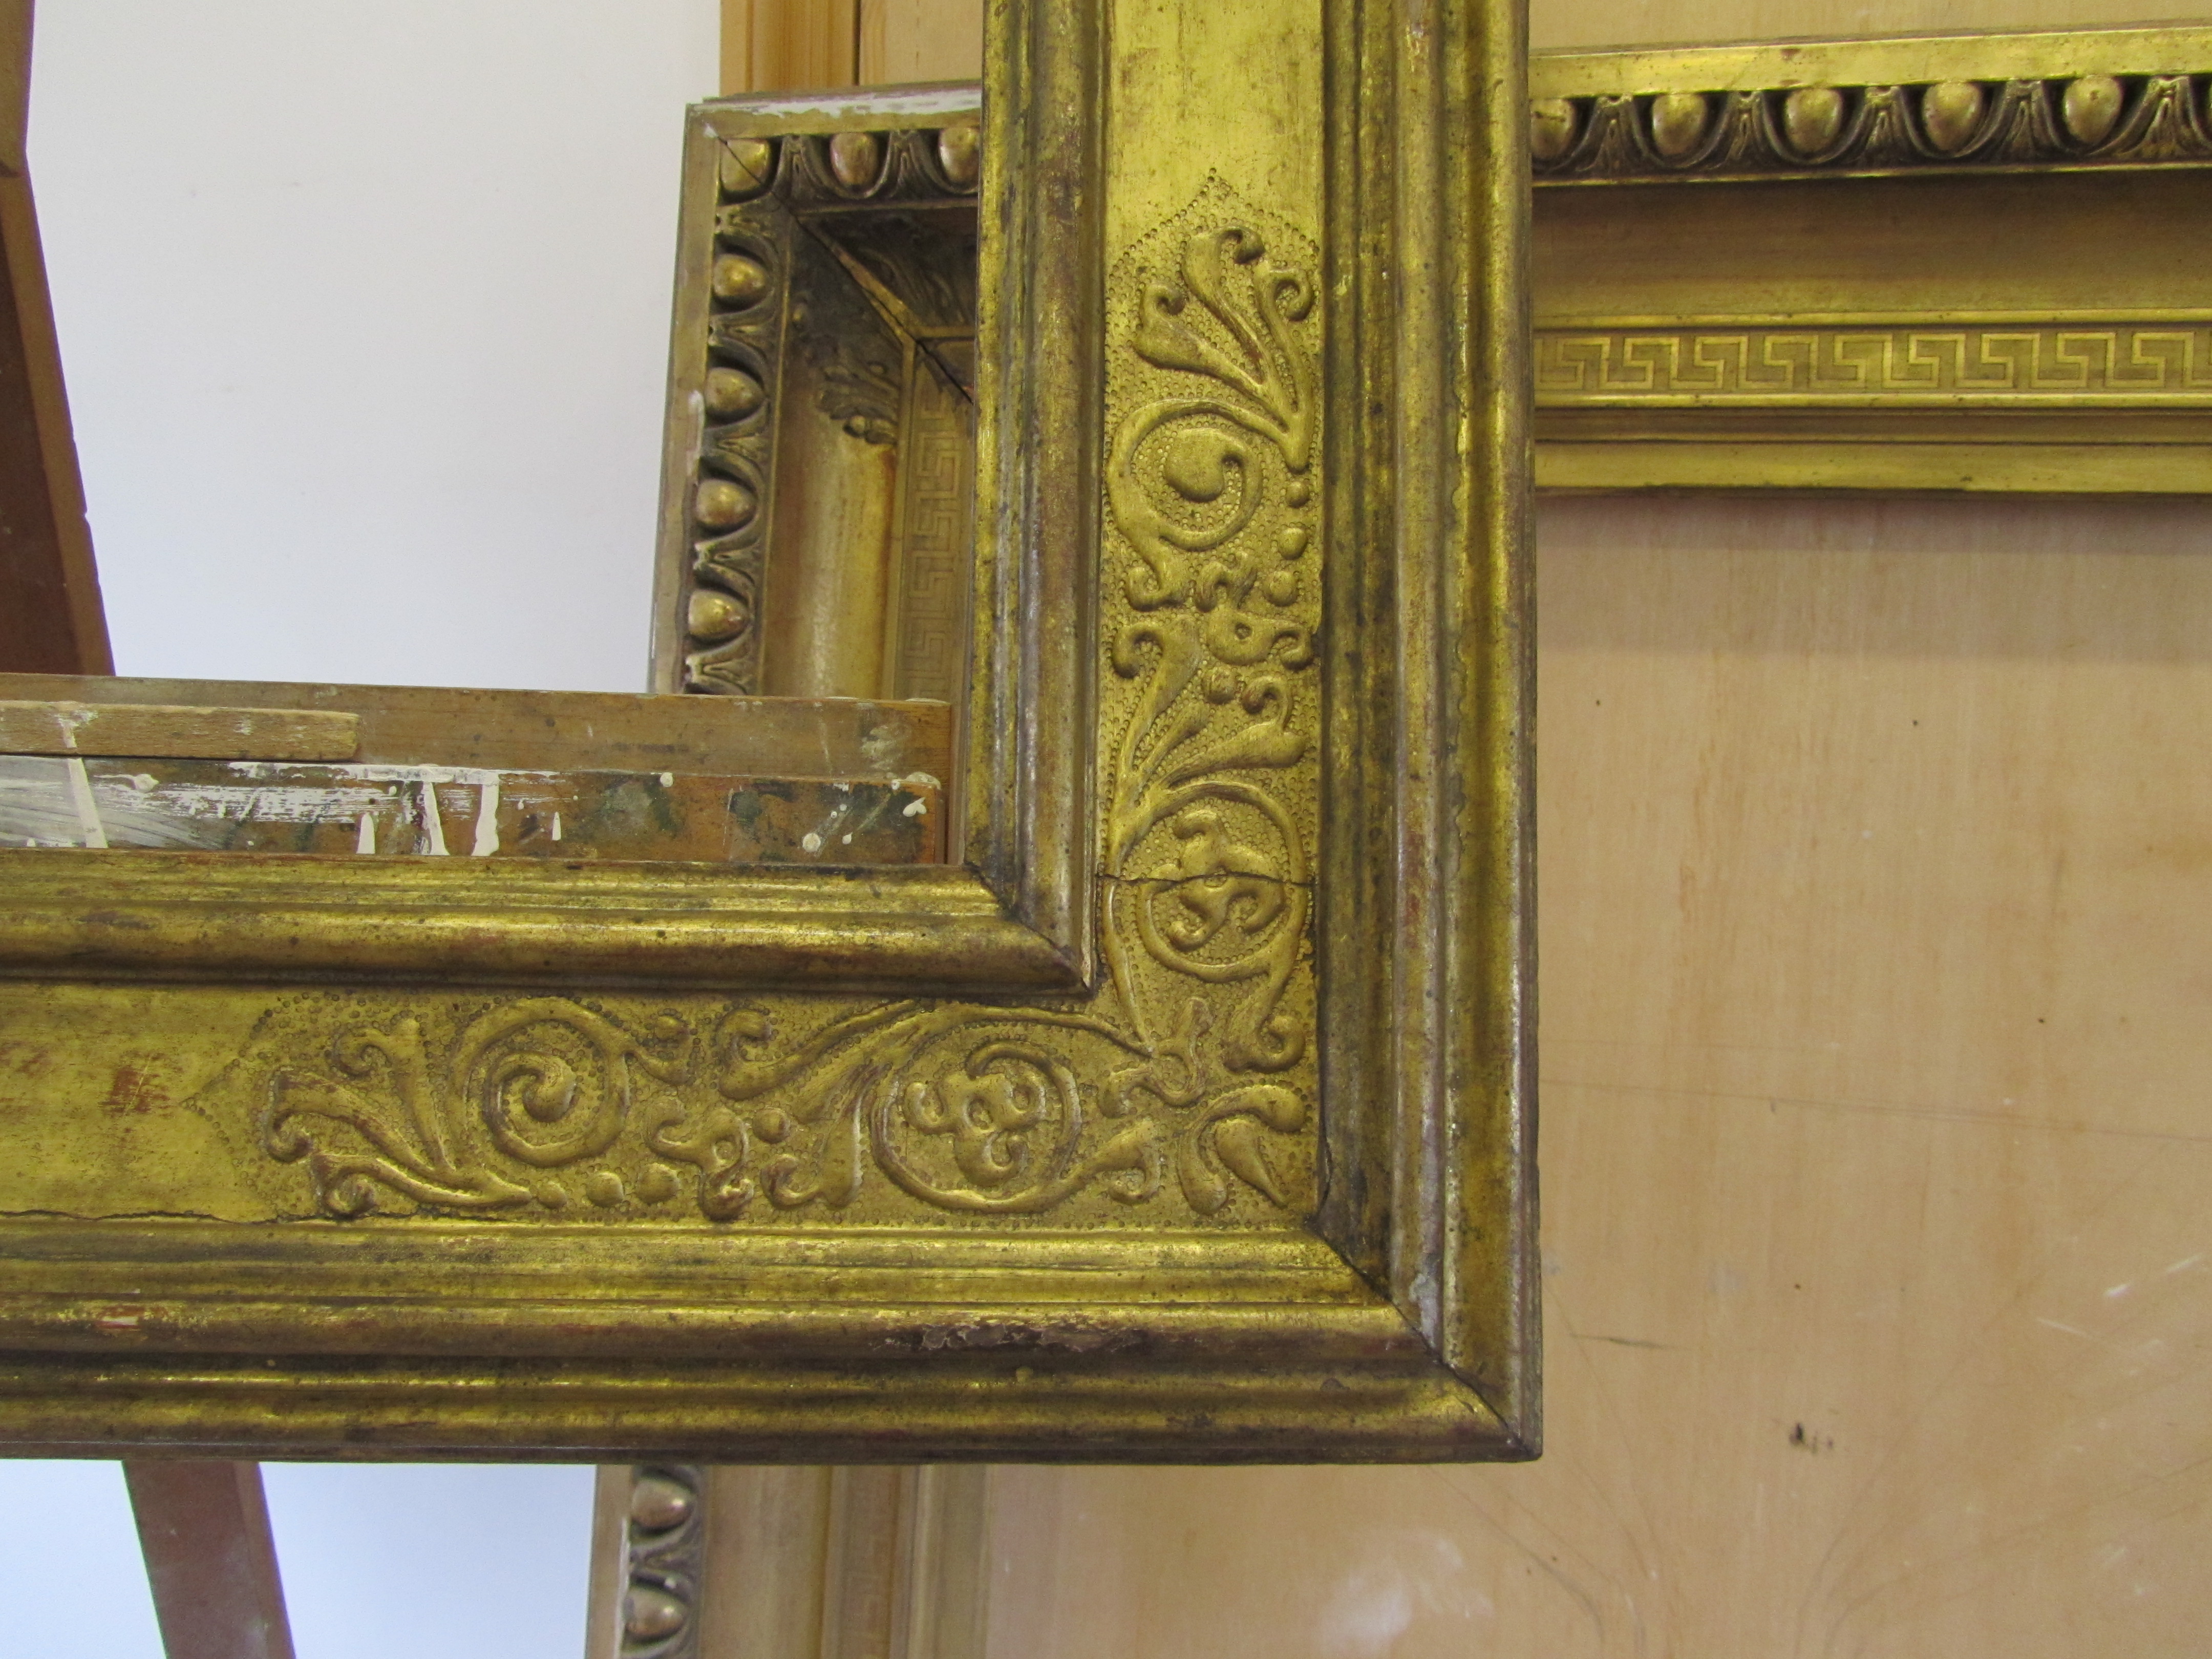 Reproduction 16th century Italian cassetta frame with pastiglia ornament.